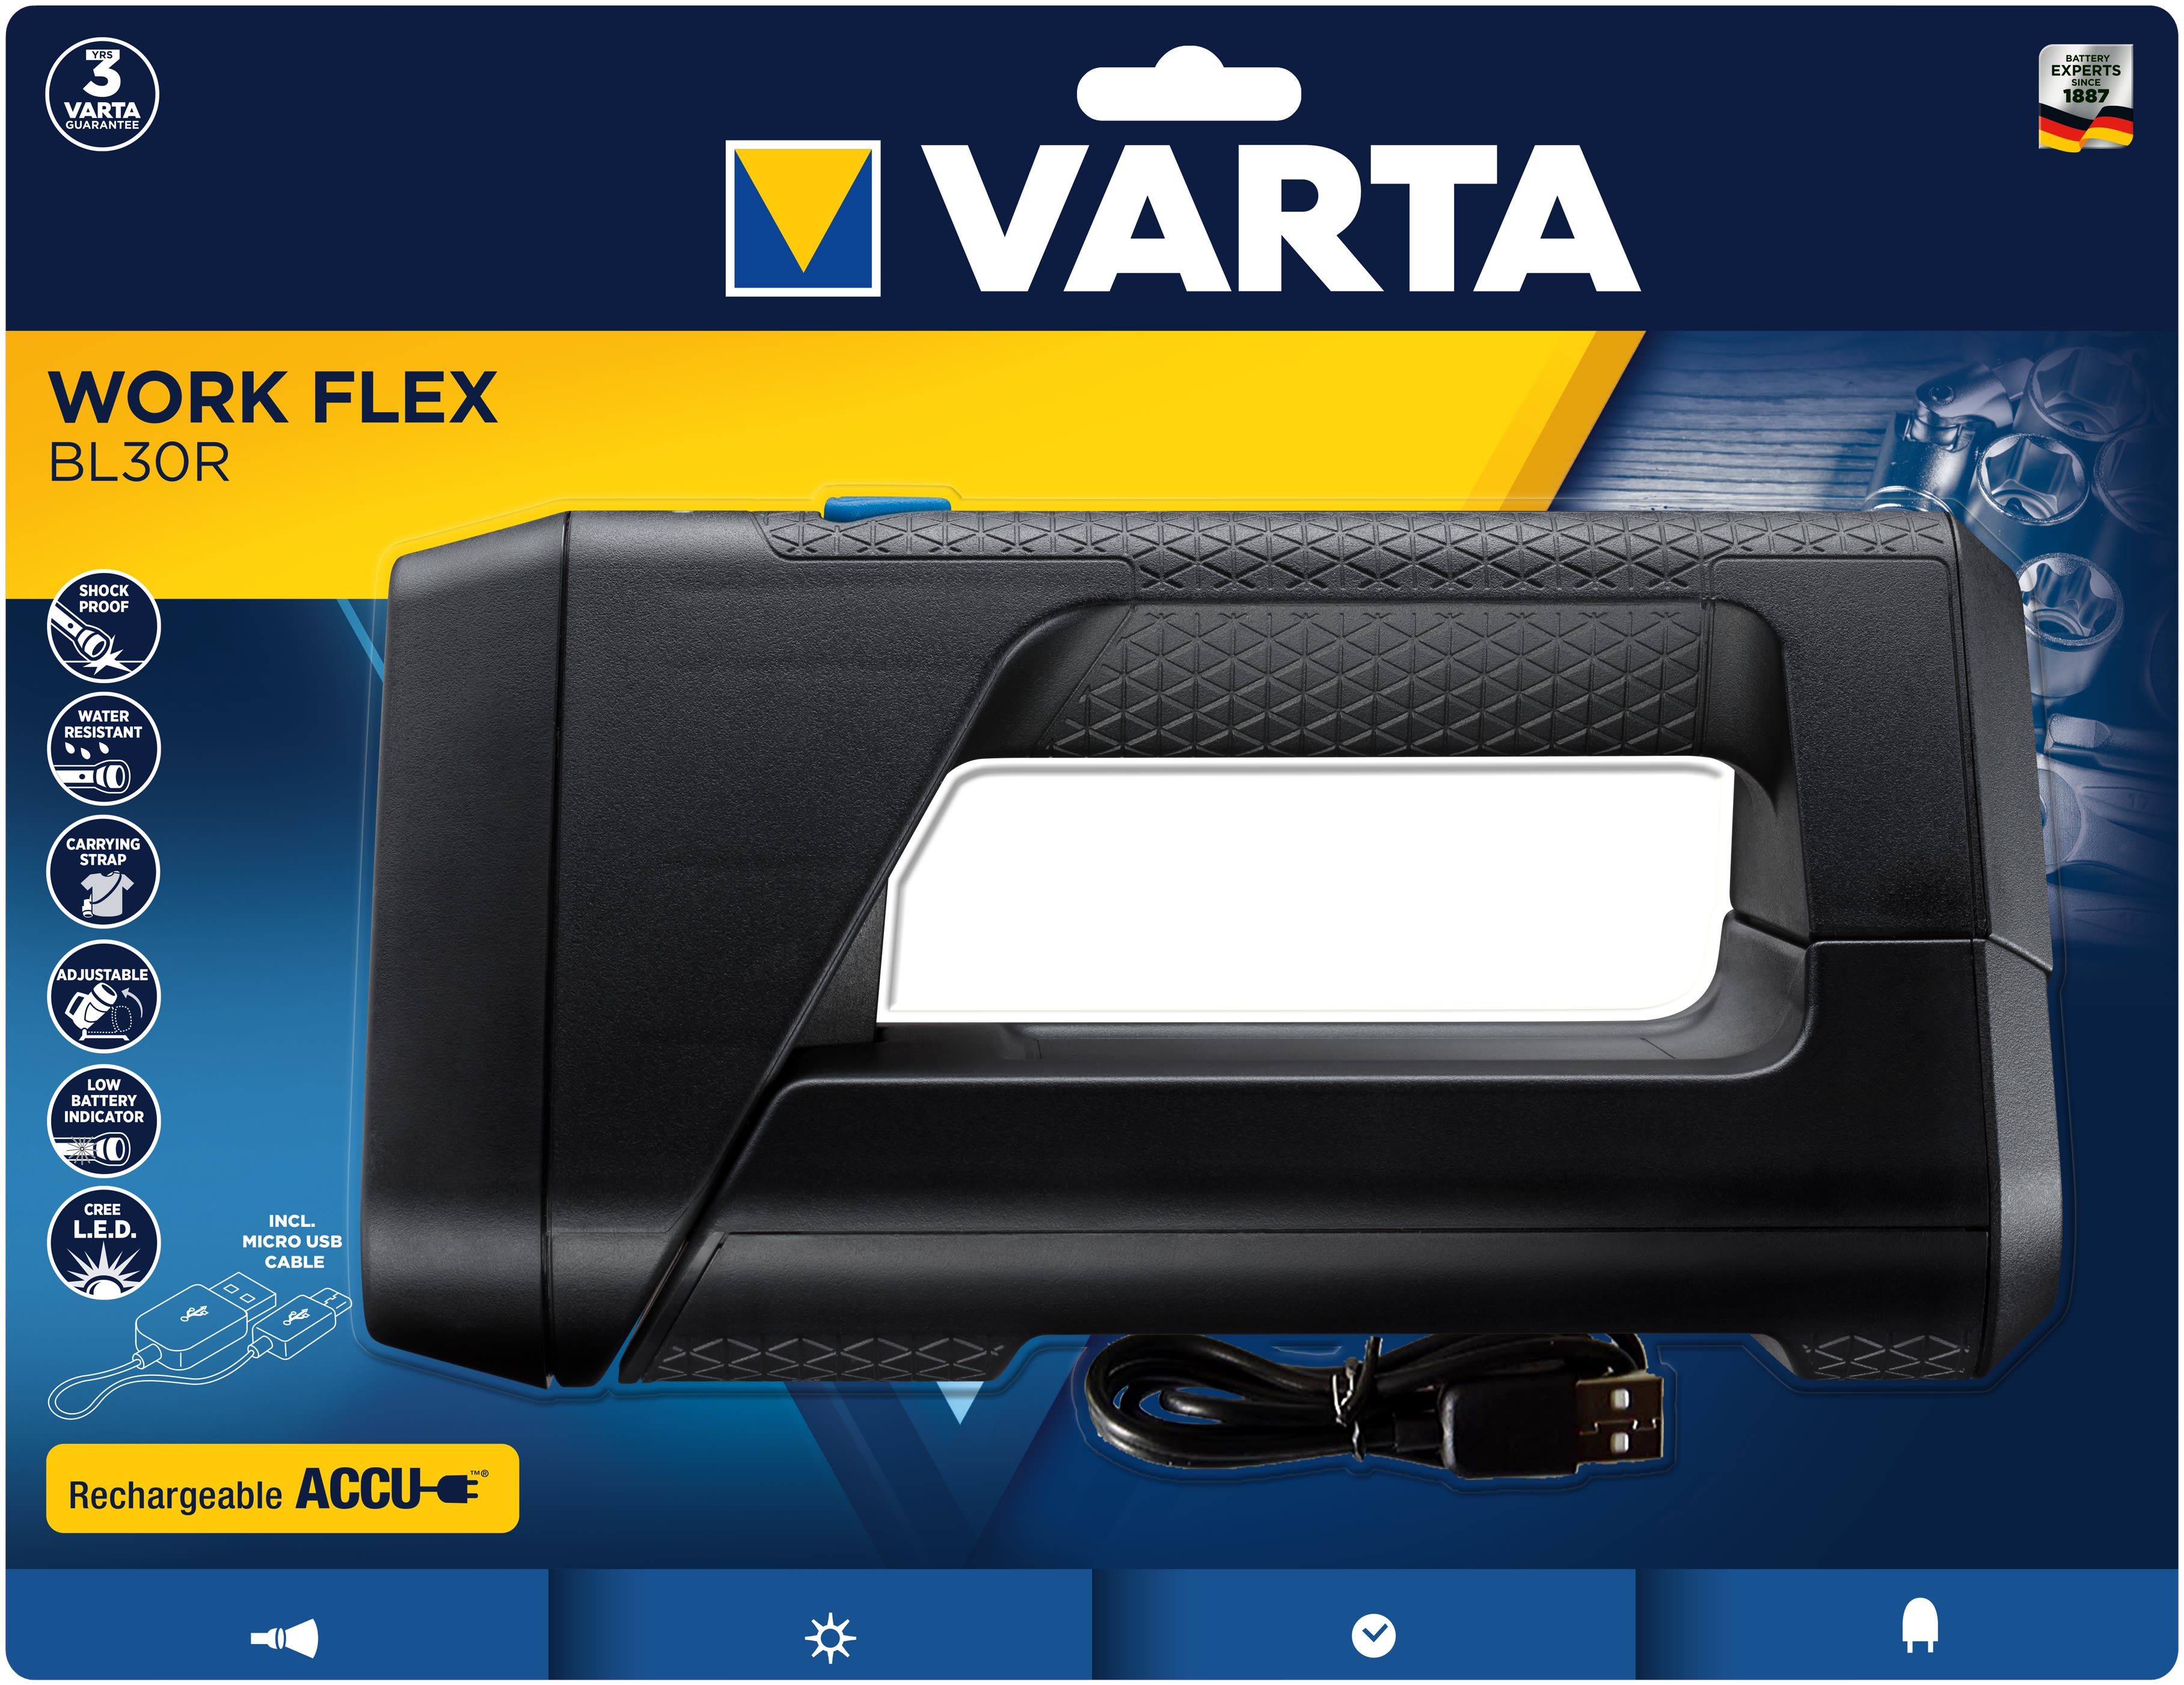 Varta - WORK FLEX BL30R - 5W+9LED - Li-Ion Battery 2600 mAh incluse